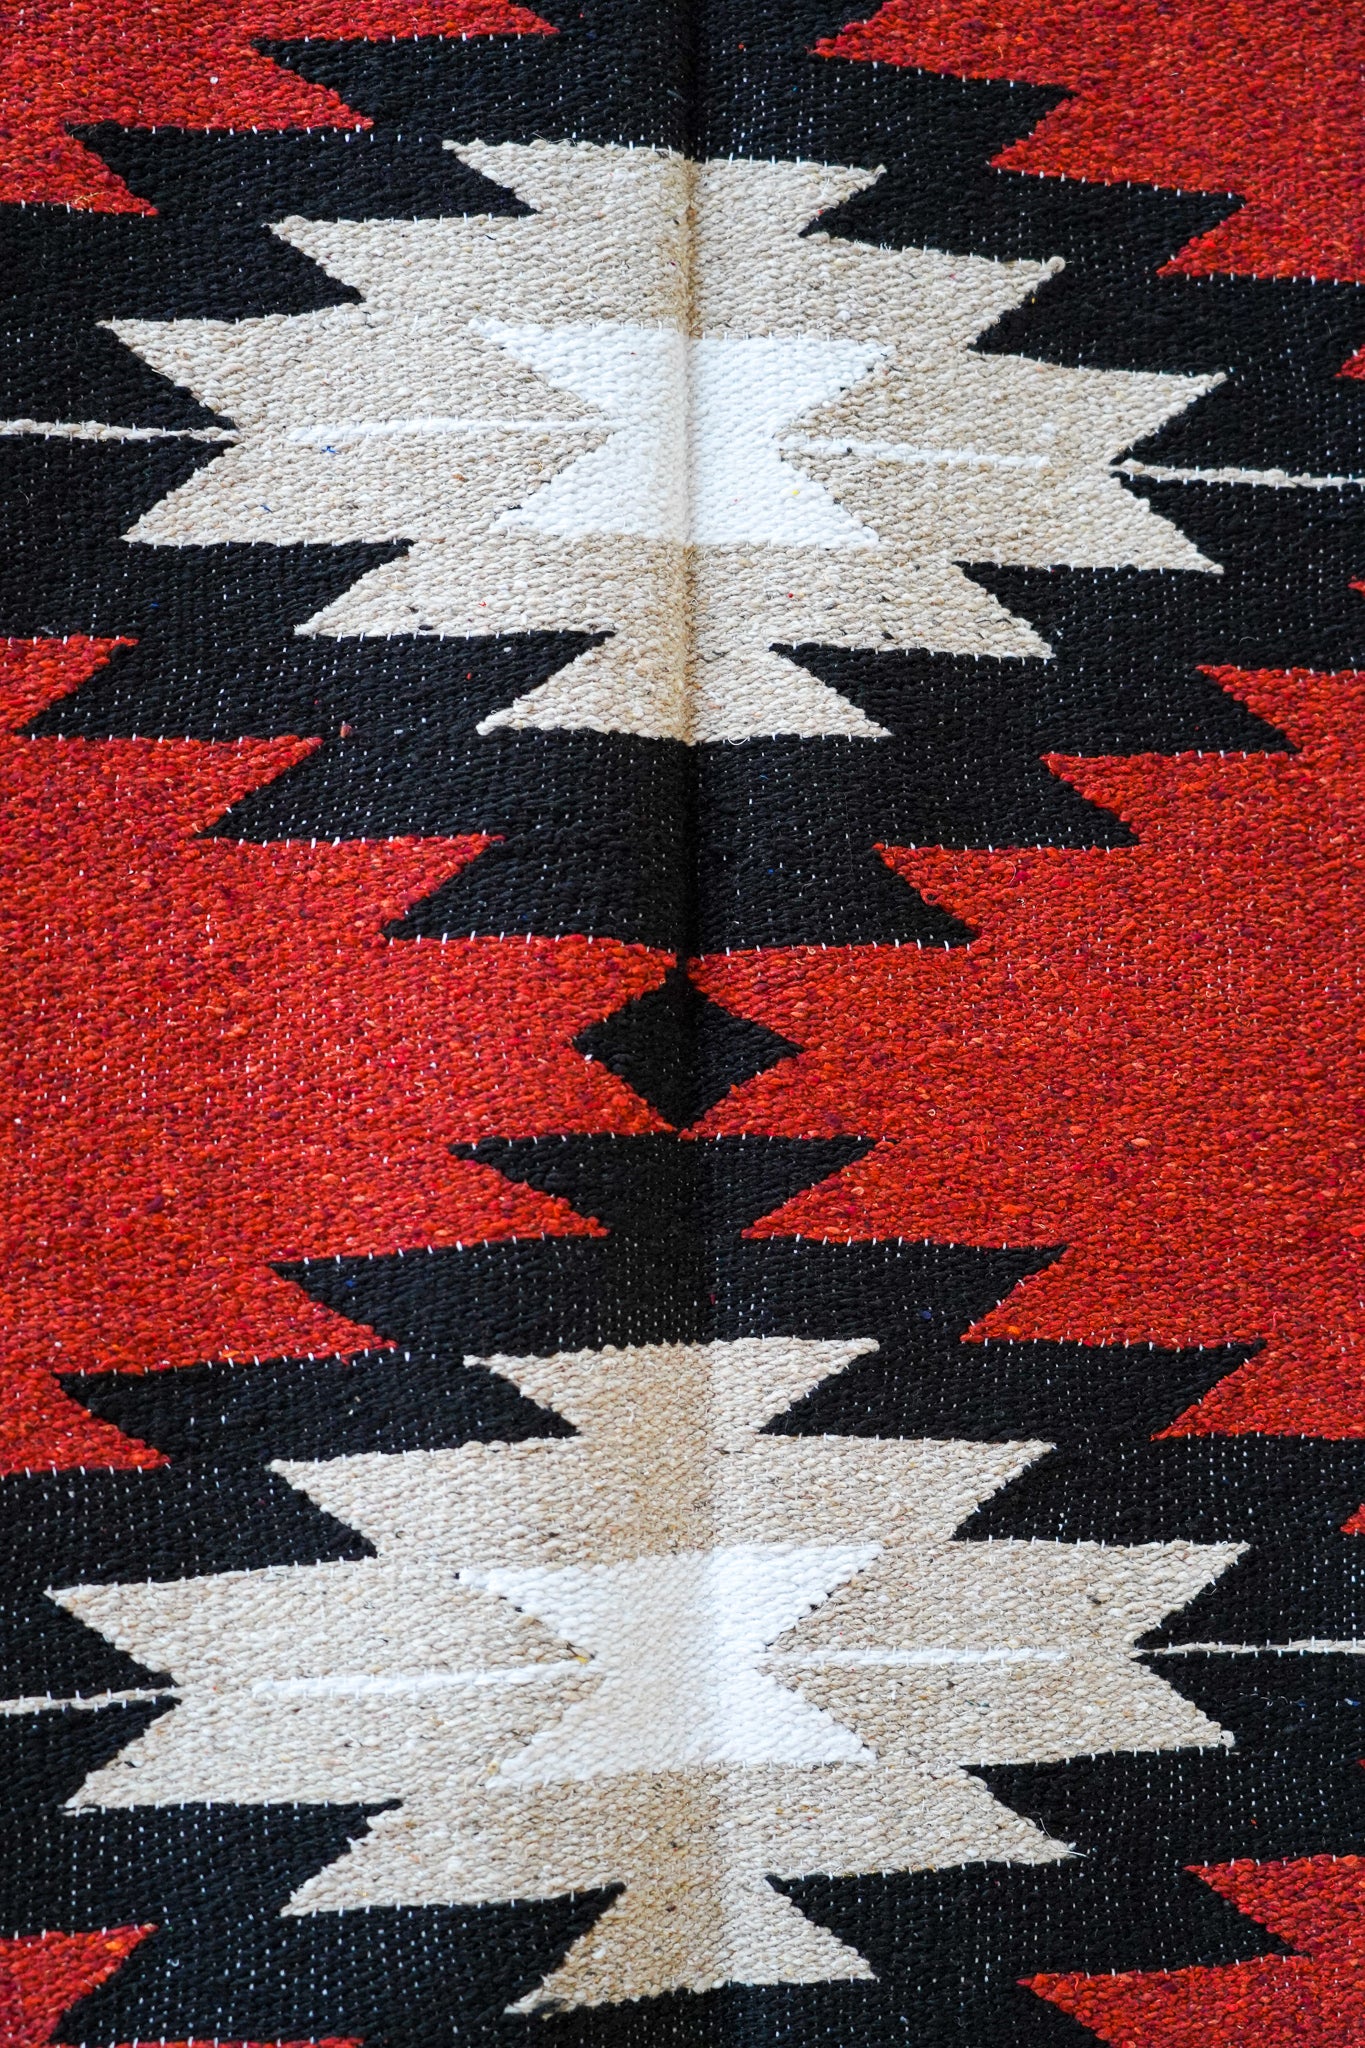 Twin Volcanoes Blanket | Mexican Handmade Blanket